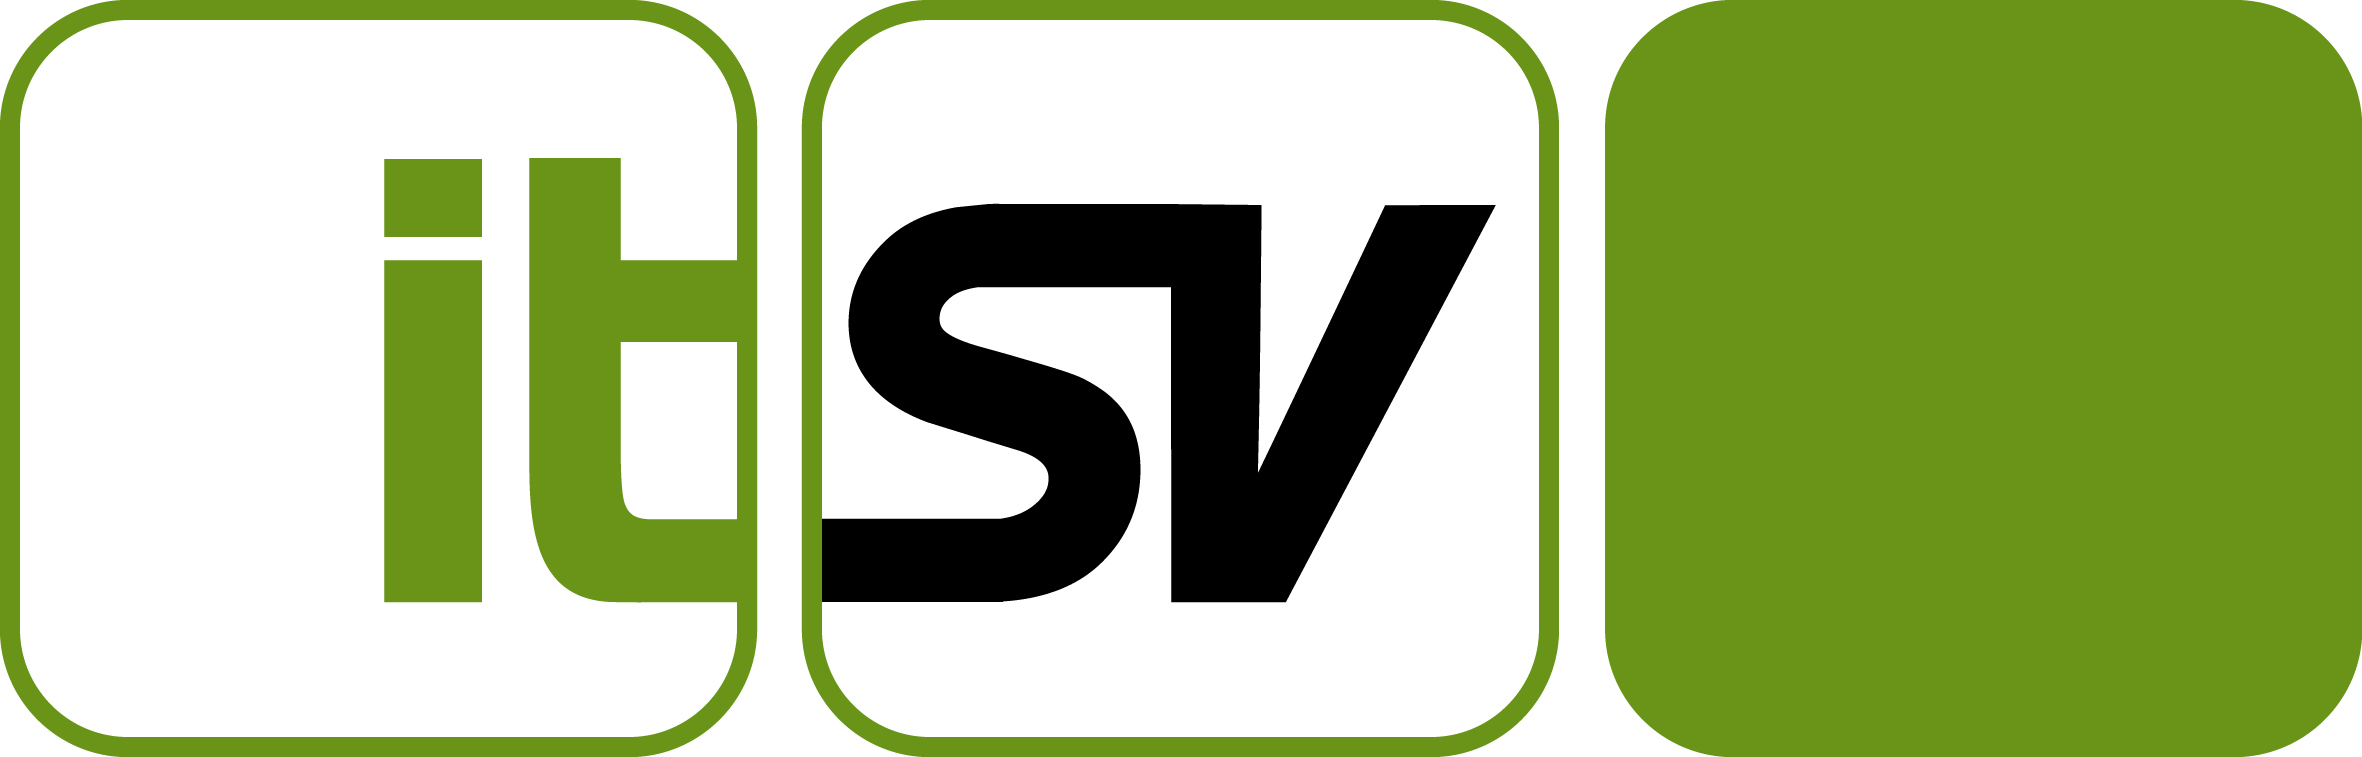 IT-Services der Sozialversicherung GmbH (ITSV)